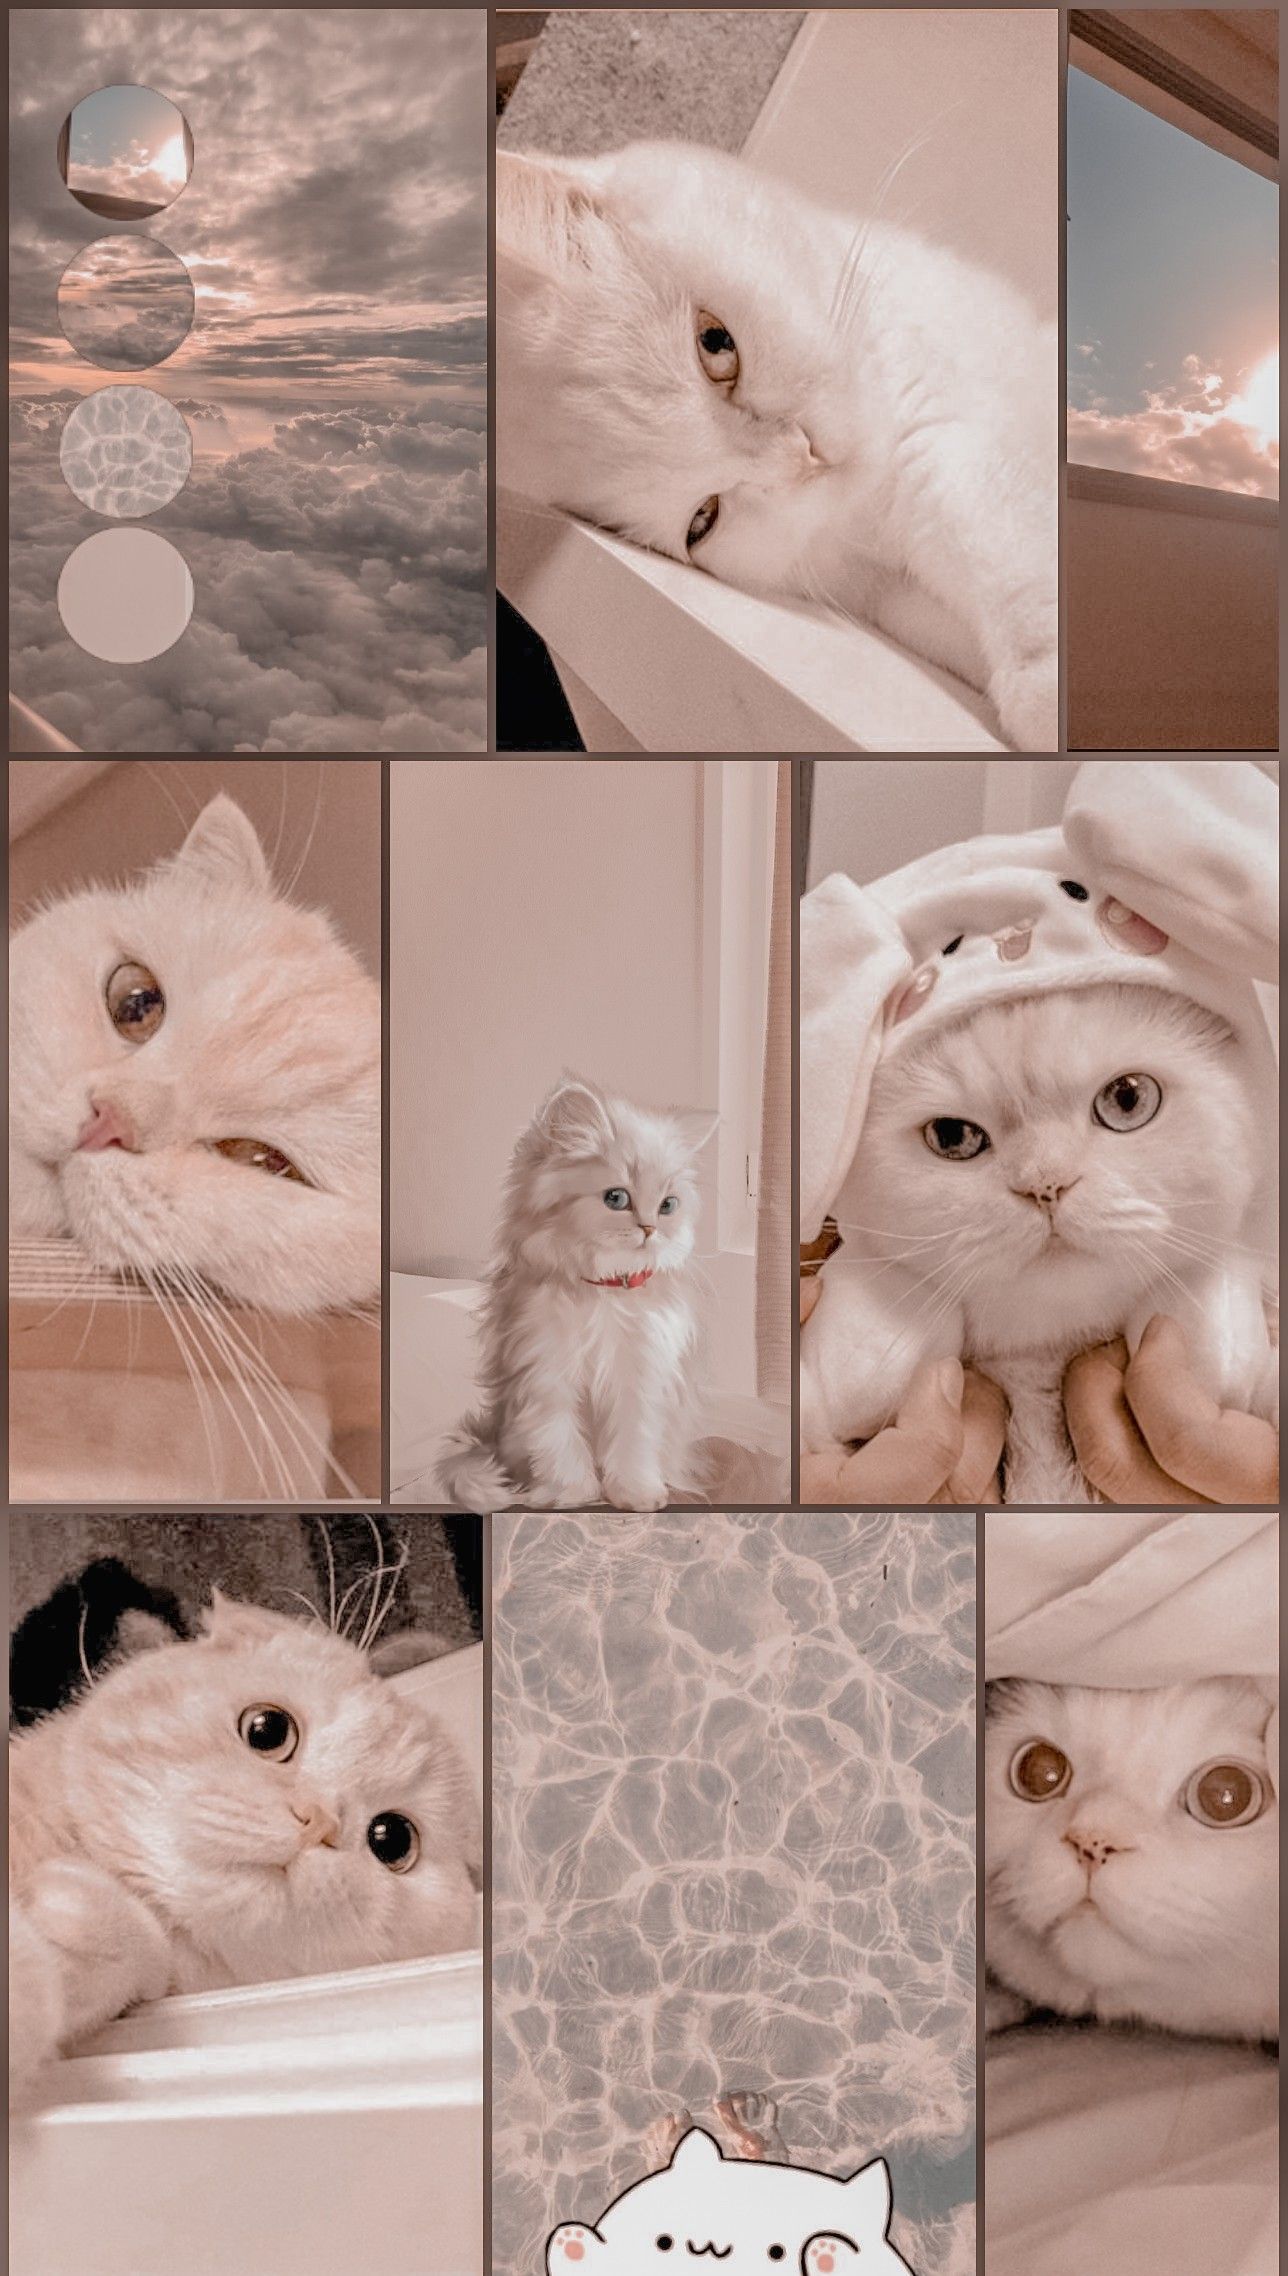 Aesthetic cat wallpaper. Fotos de animais fofos, Fotos de animais engraçados, Fotos de animais